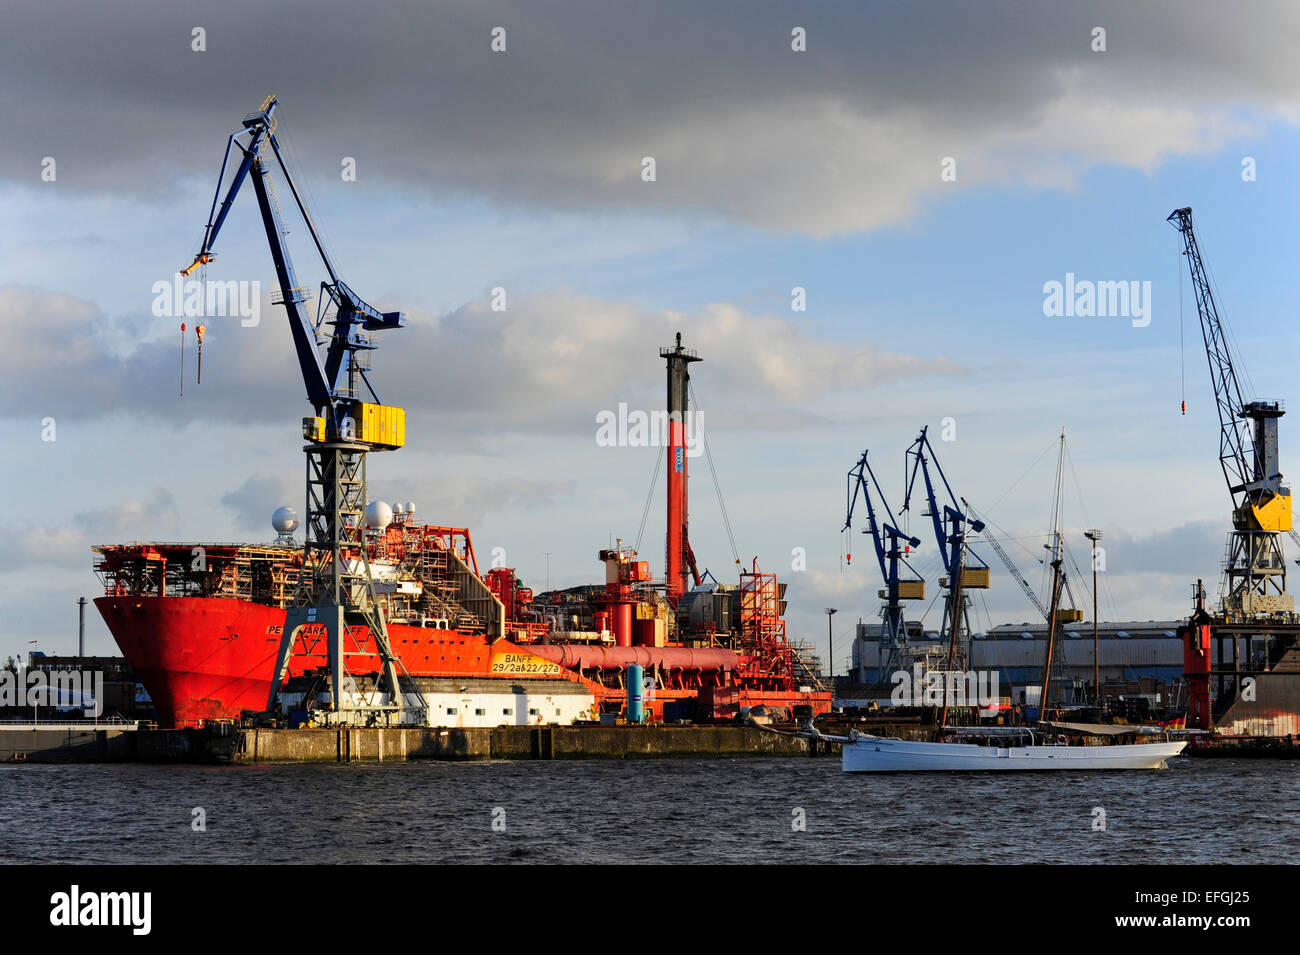 Ship in a shipyard, Hamburg harbor on the Elbe, Hamburg, Germany Stock Photo